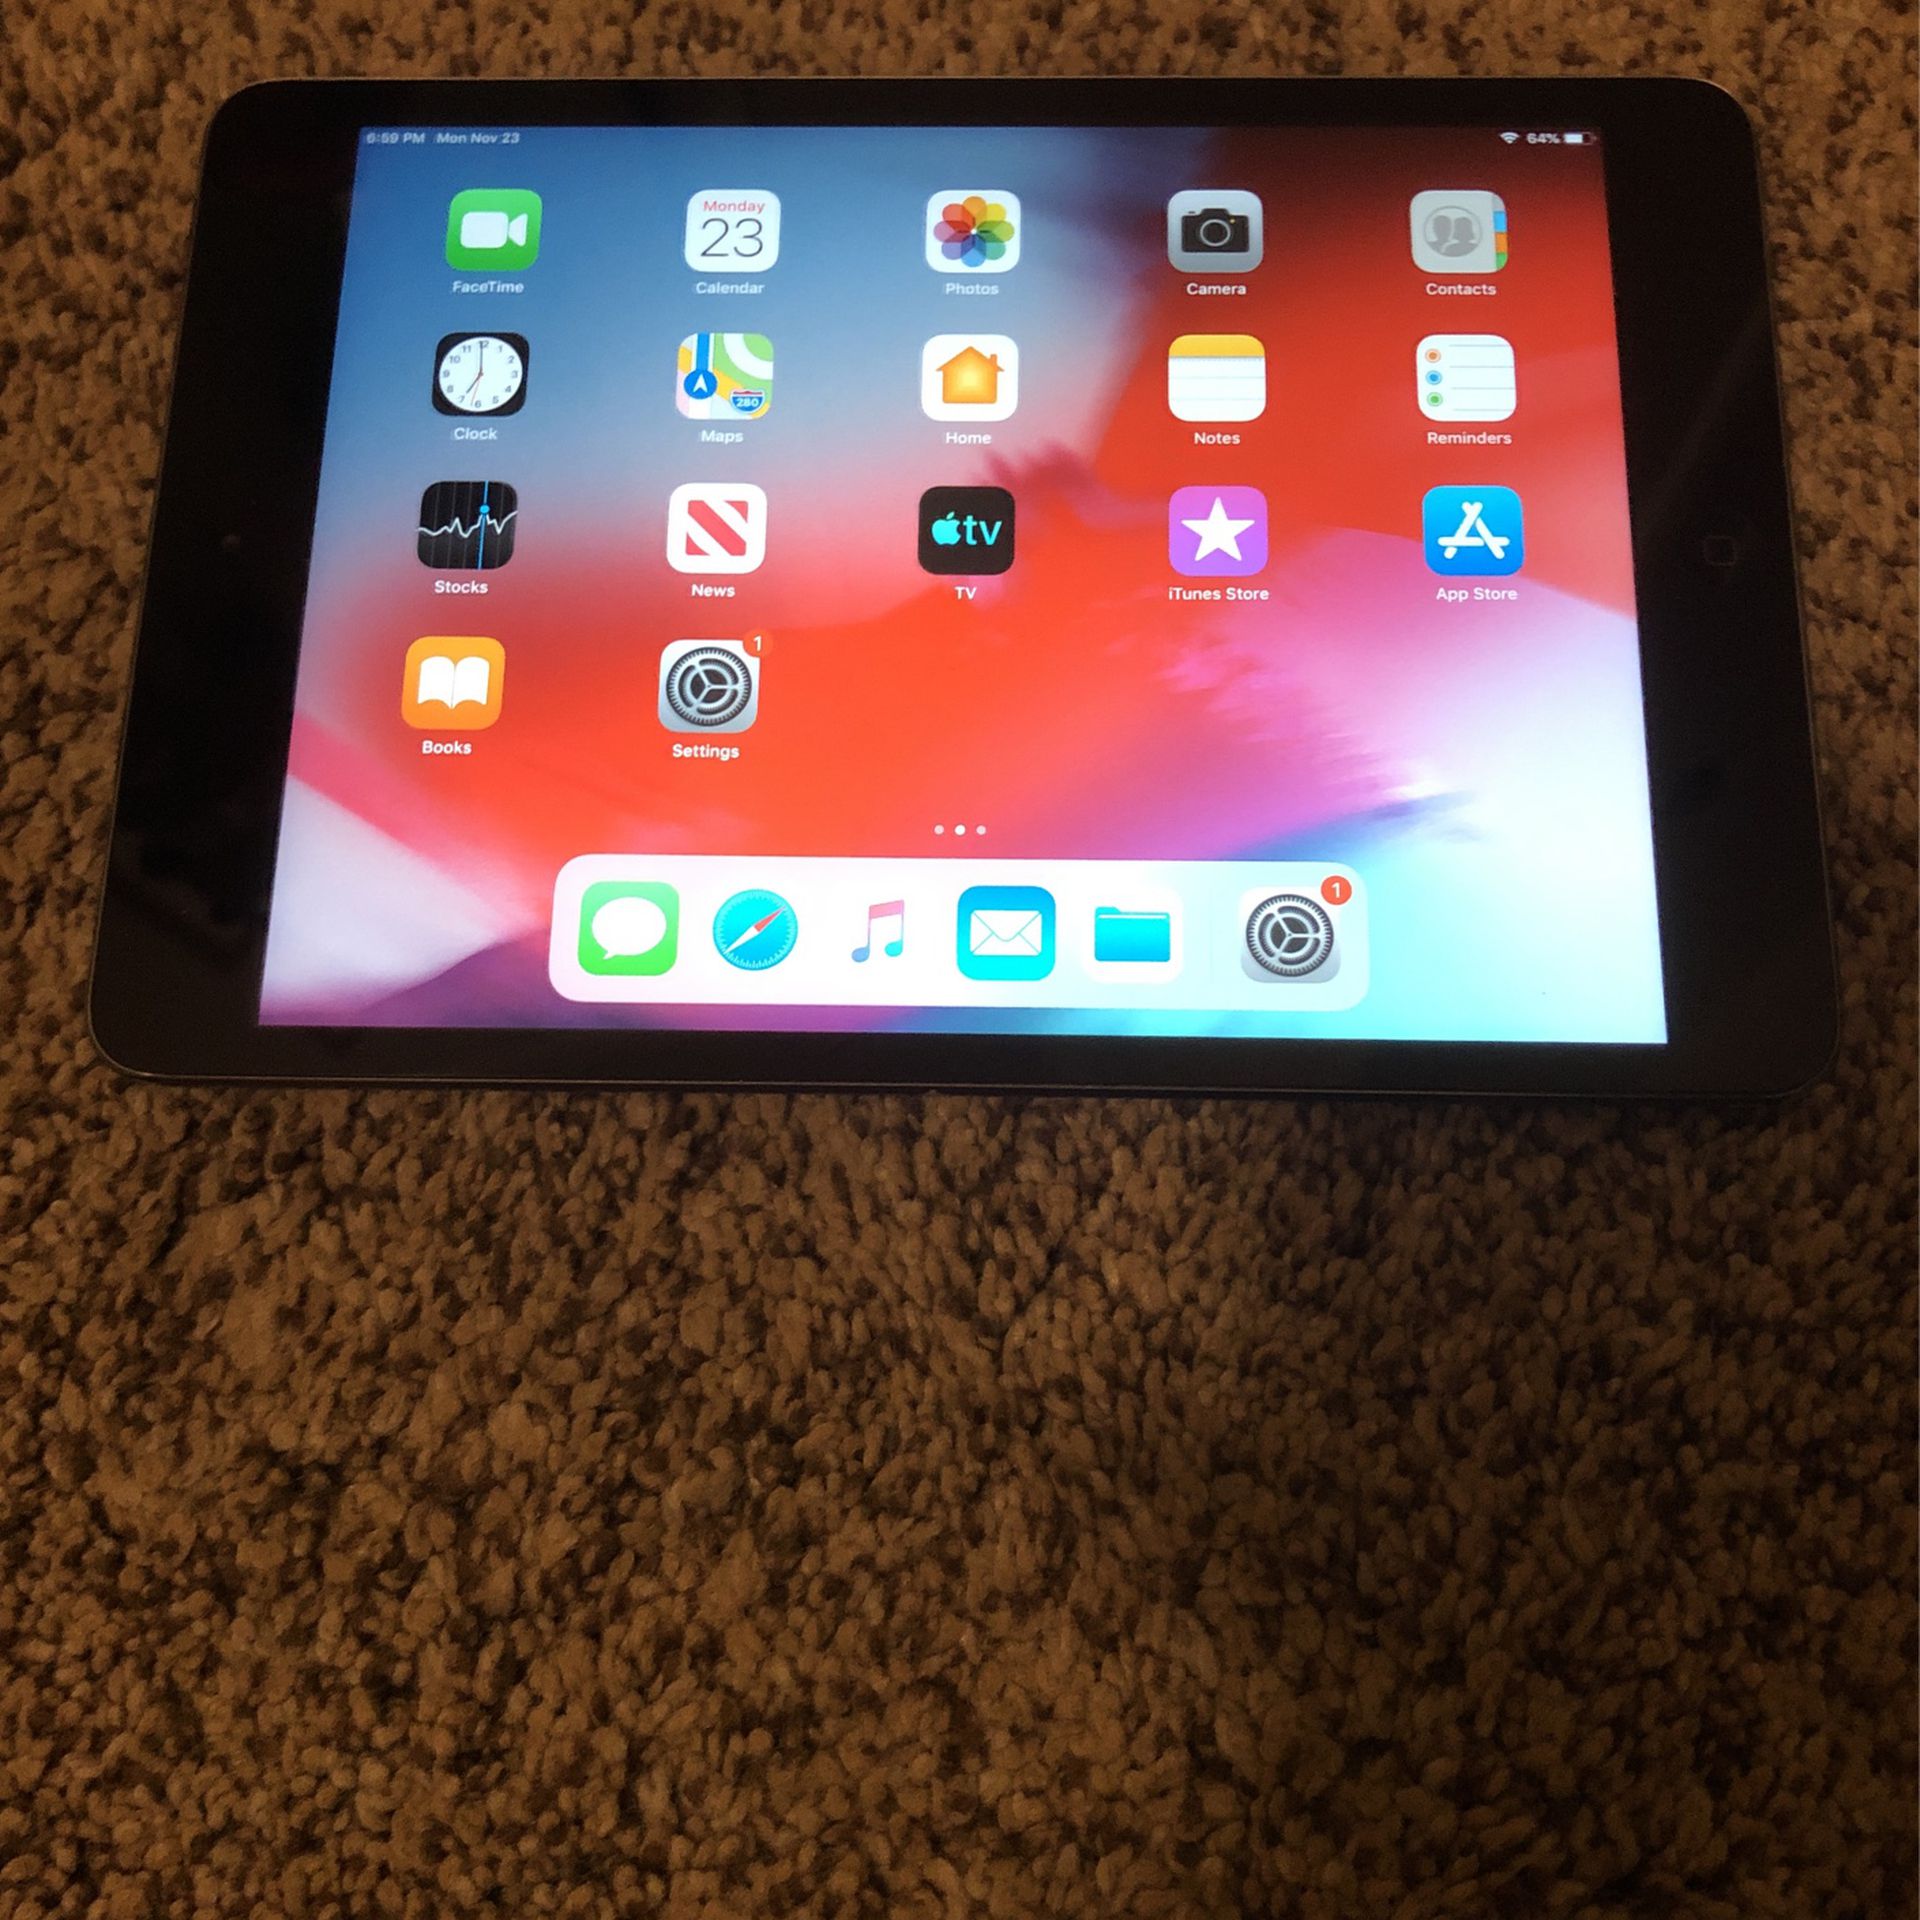 Apple iPad Mini 2 with Bluetooth Keyboard Case